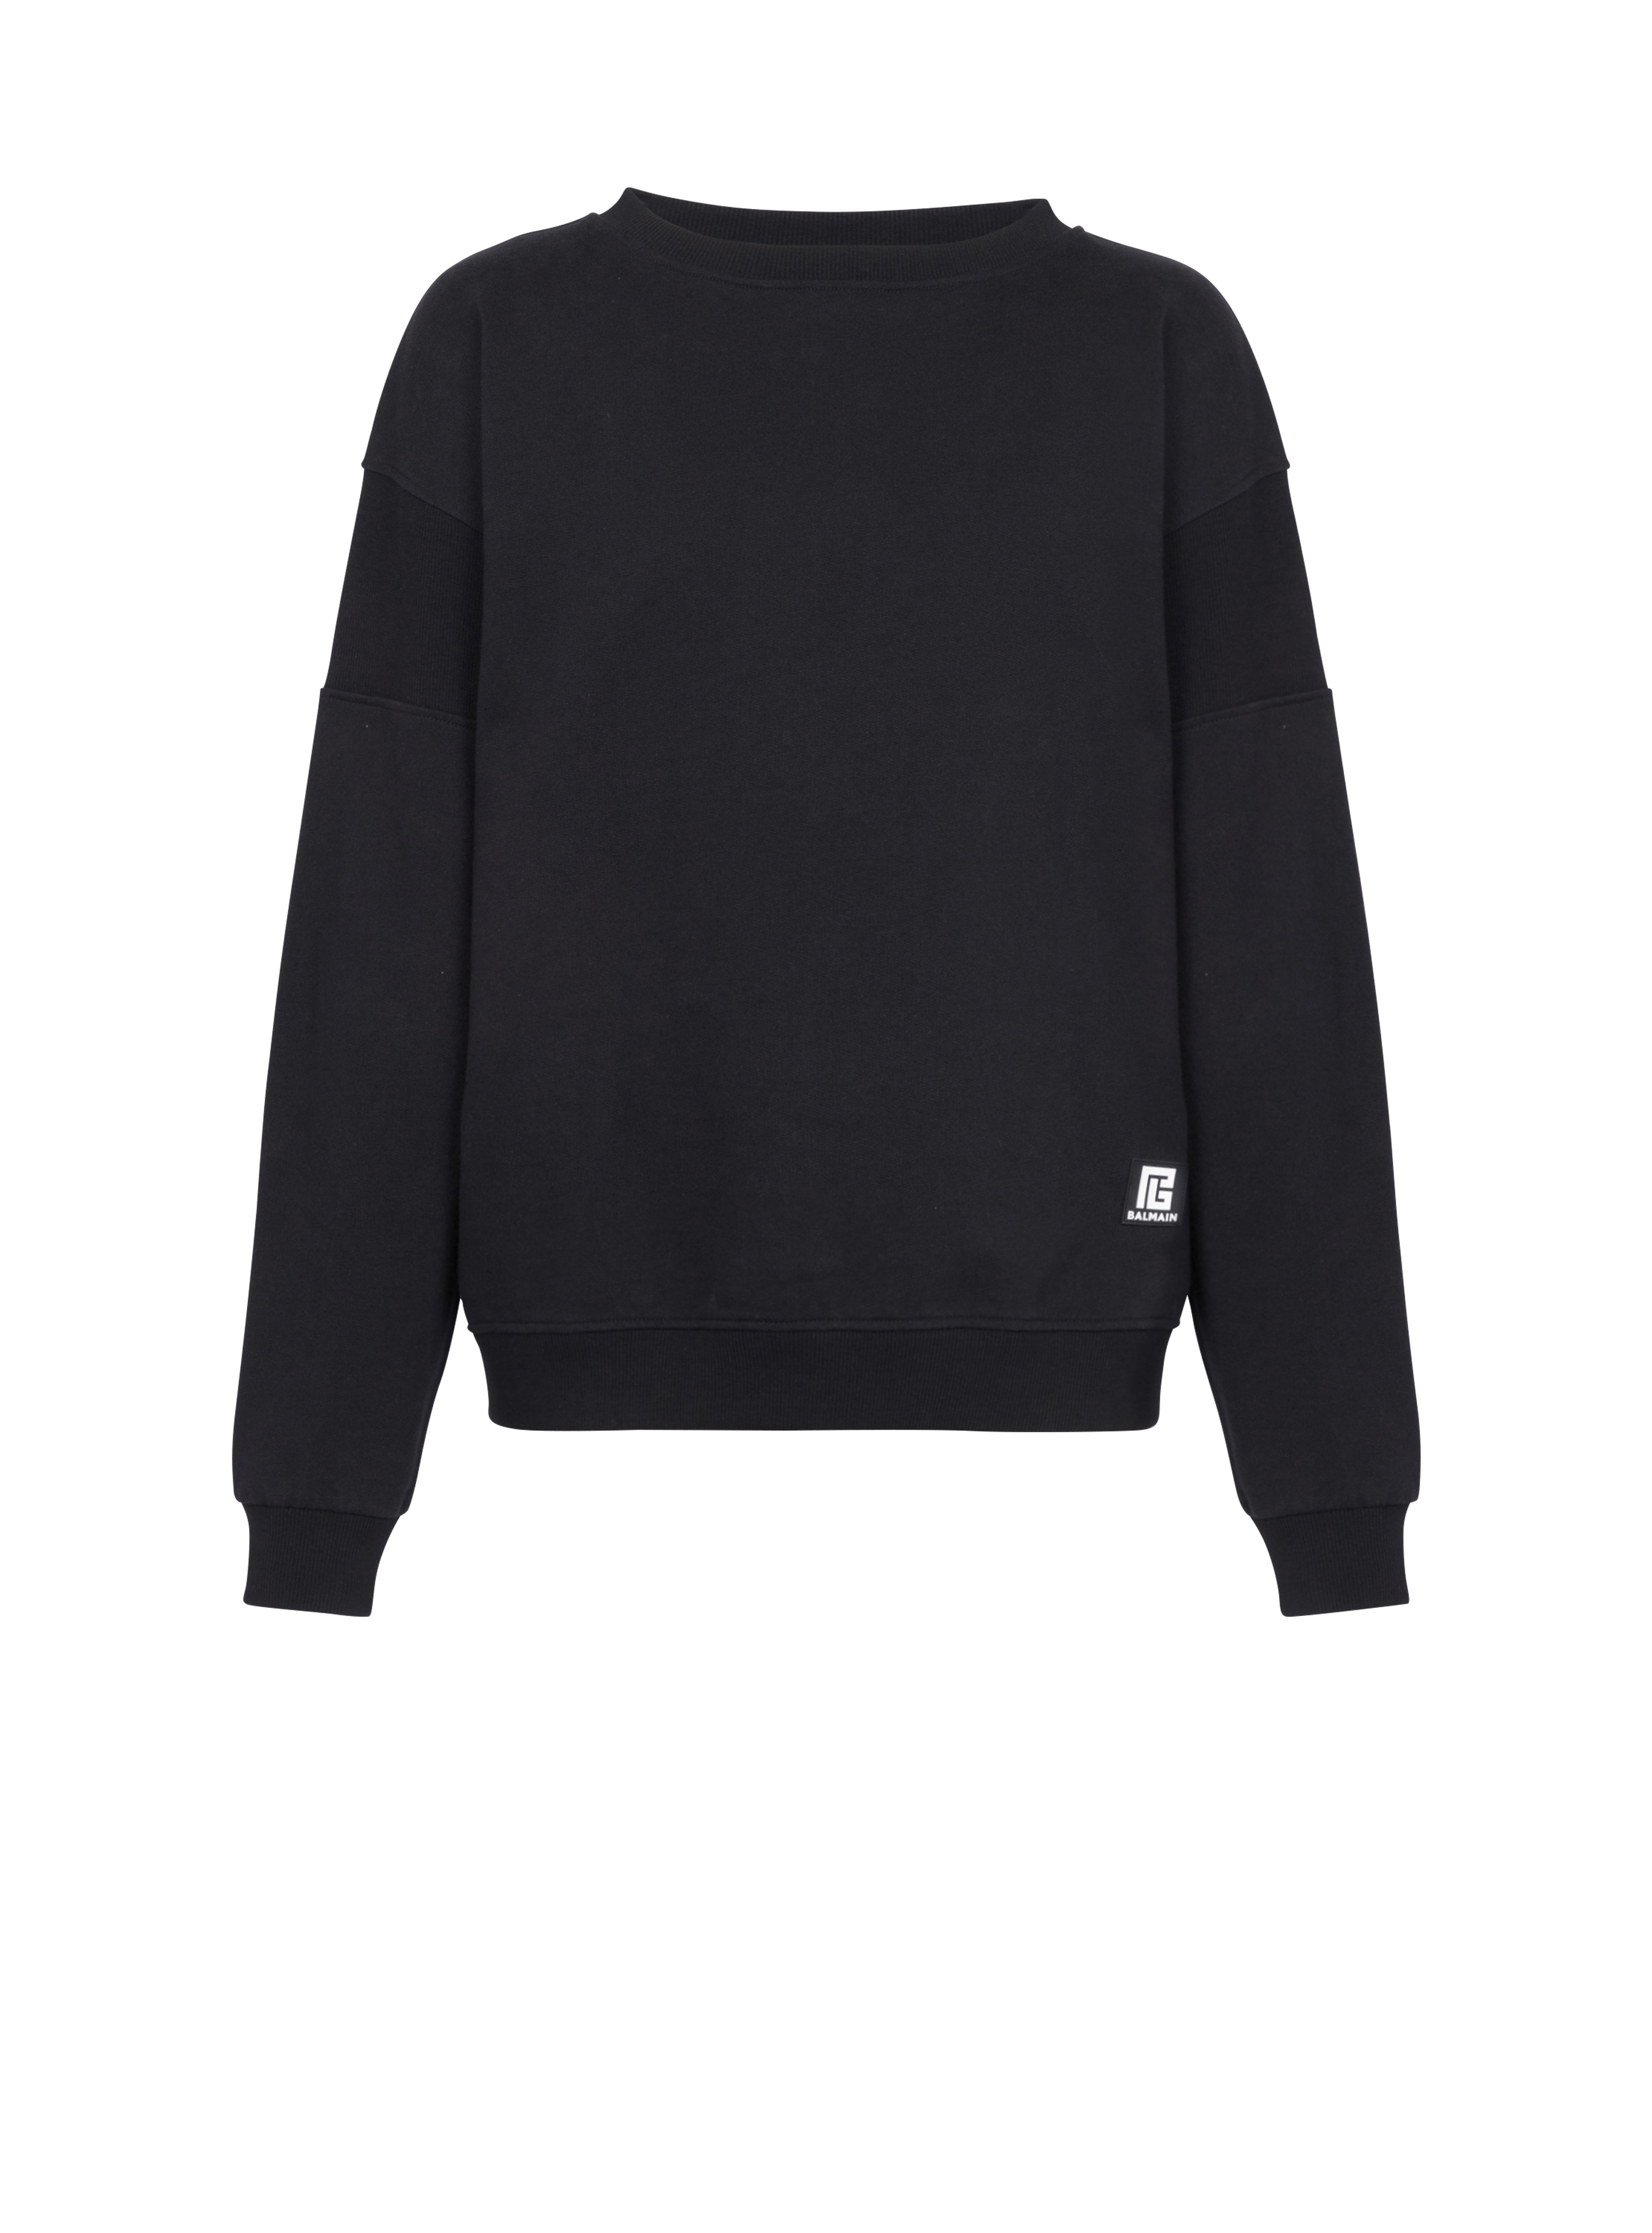 Sweatshirt aus Baumwolle mit Balmain Logo-Print, schwarz